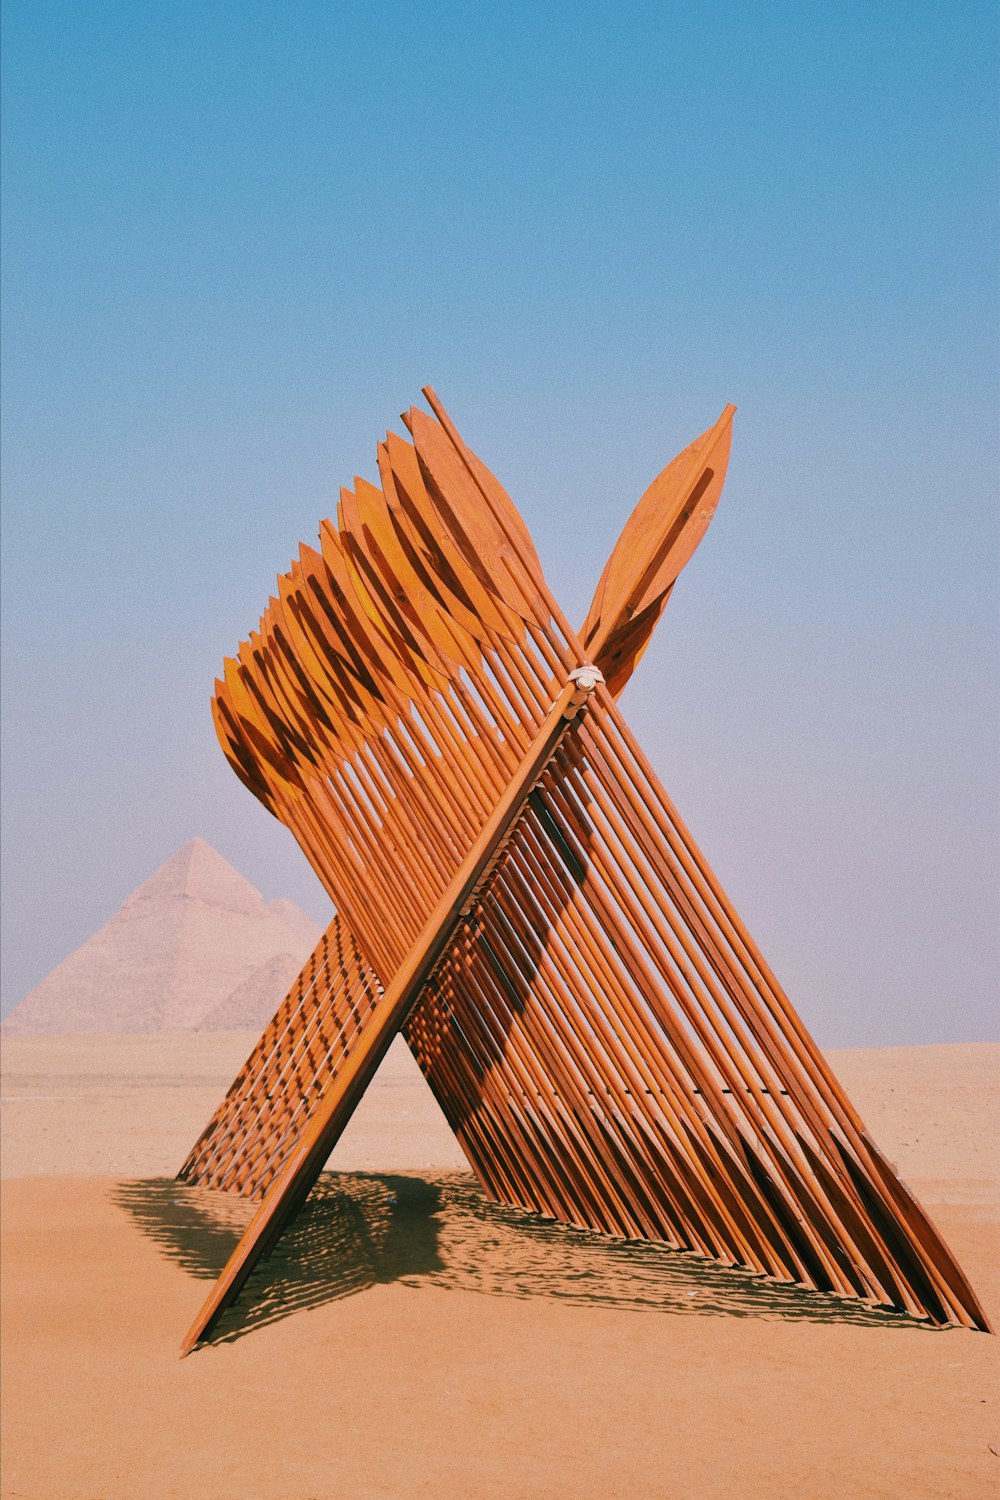 uma grande escultura de madeira sentada no meio de um deserto